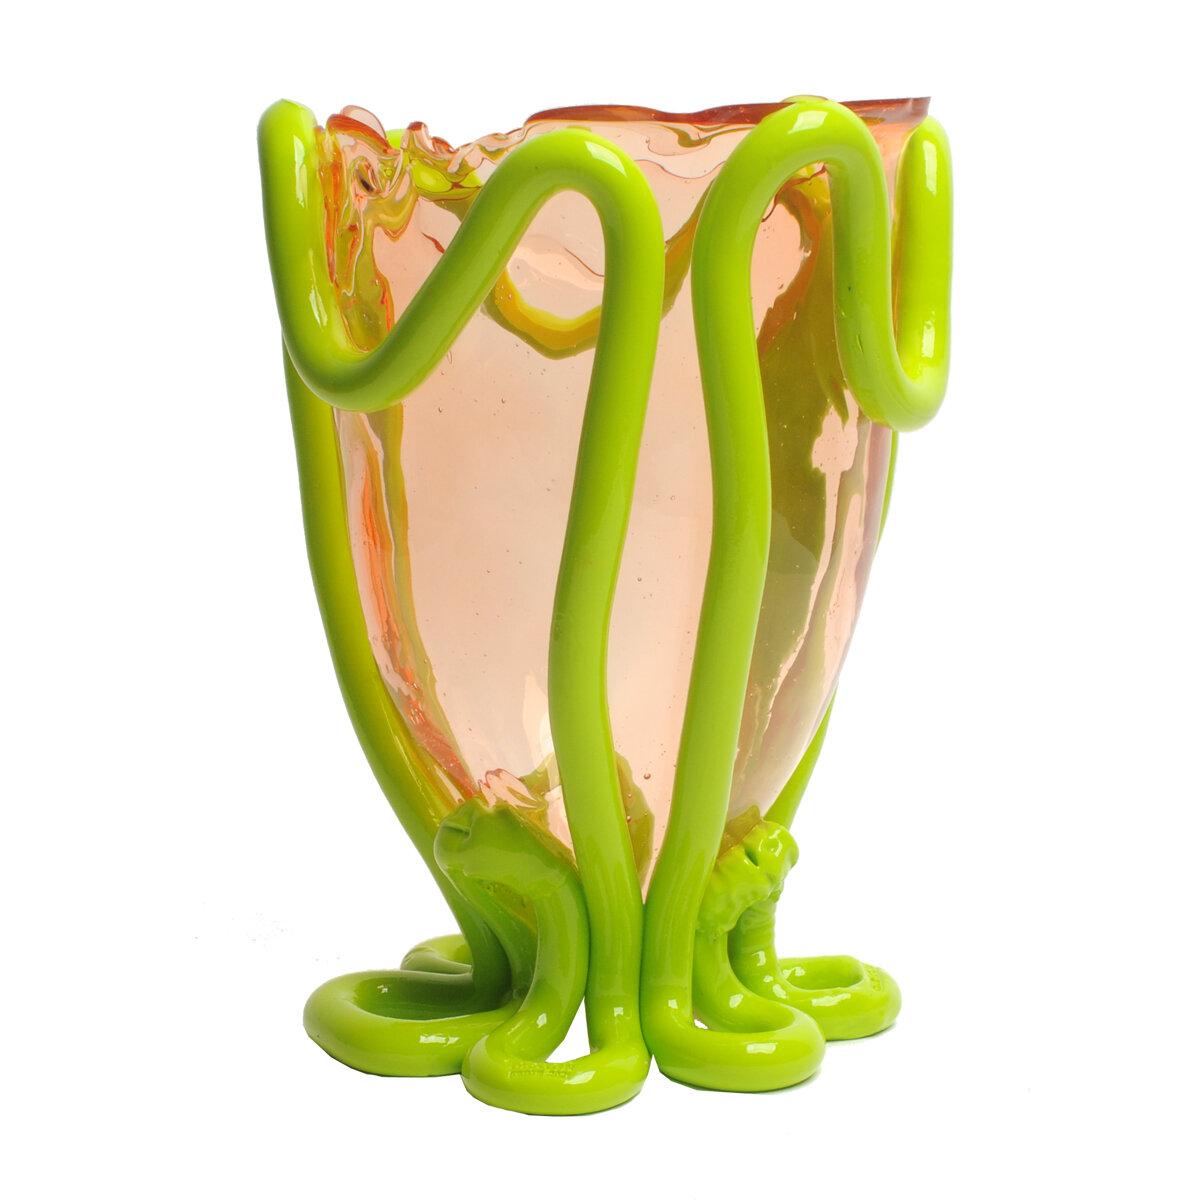 Vase Indian Summer, rose clair, citron vert mat

Vase en résine souple conçu par Gaetano Pesce en 1995 pour la collection Fish Design.
Mesures : L ø 22cm x H 36cm
Couleurs : rose clair, citron vert mat

Autres tailles disponibles.

Vase en résine